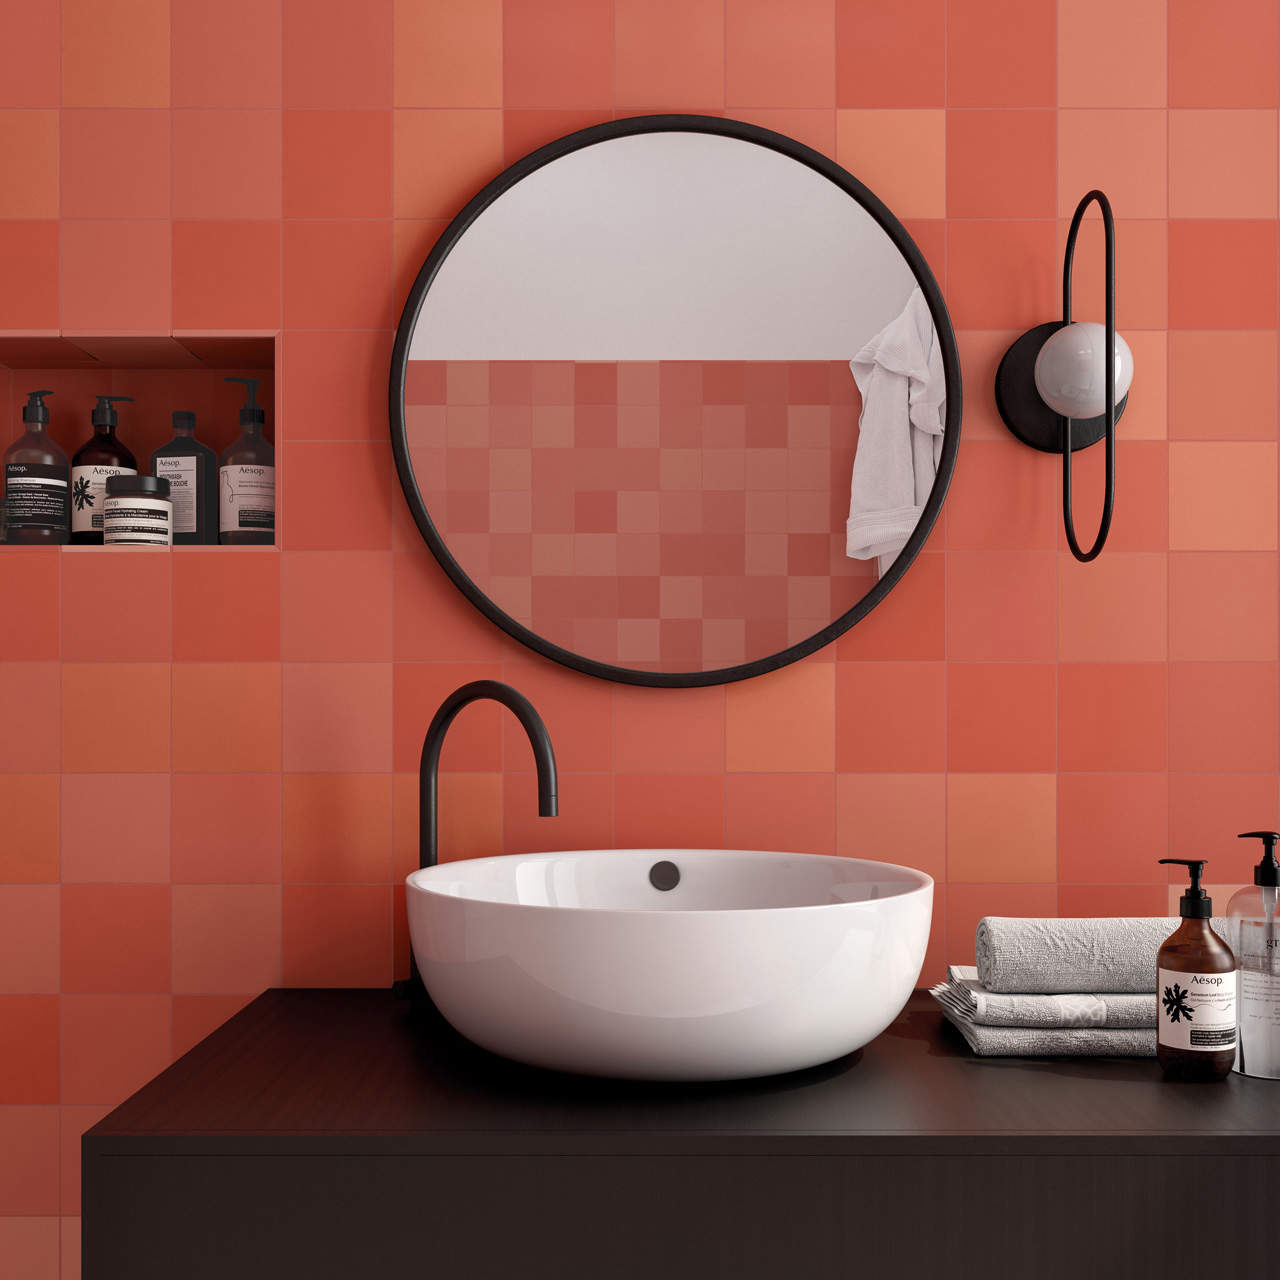 Baño con pared de lavabo revestida con azulejos color coral.